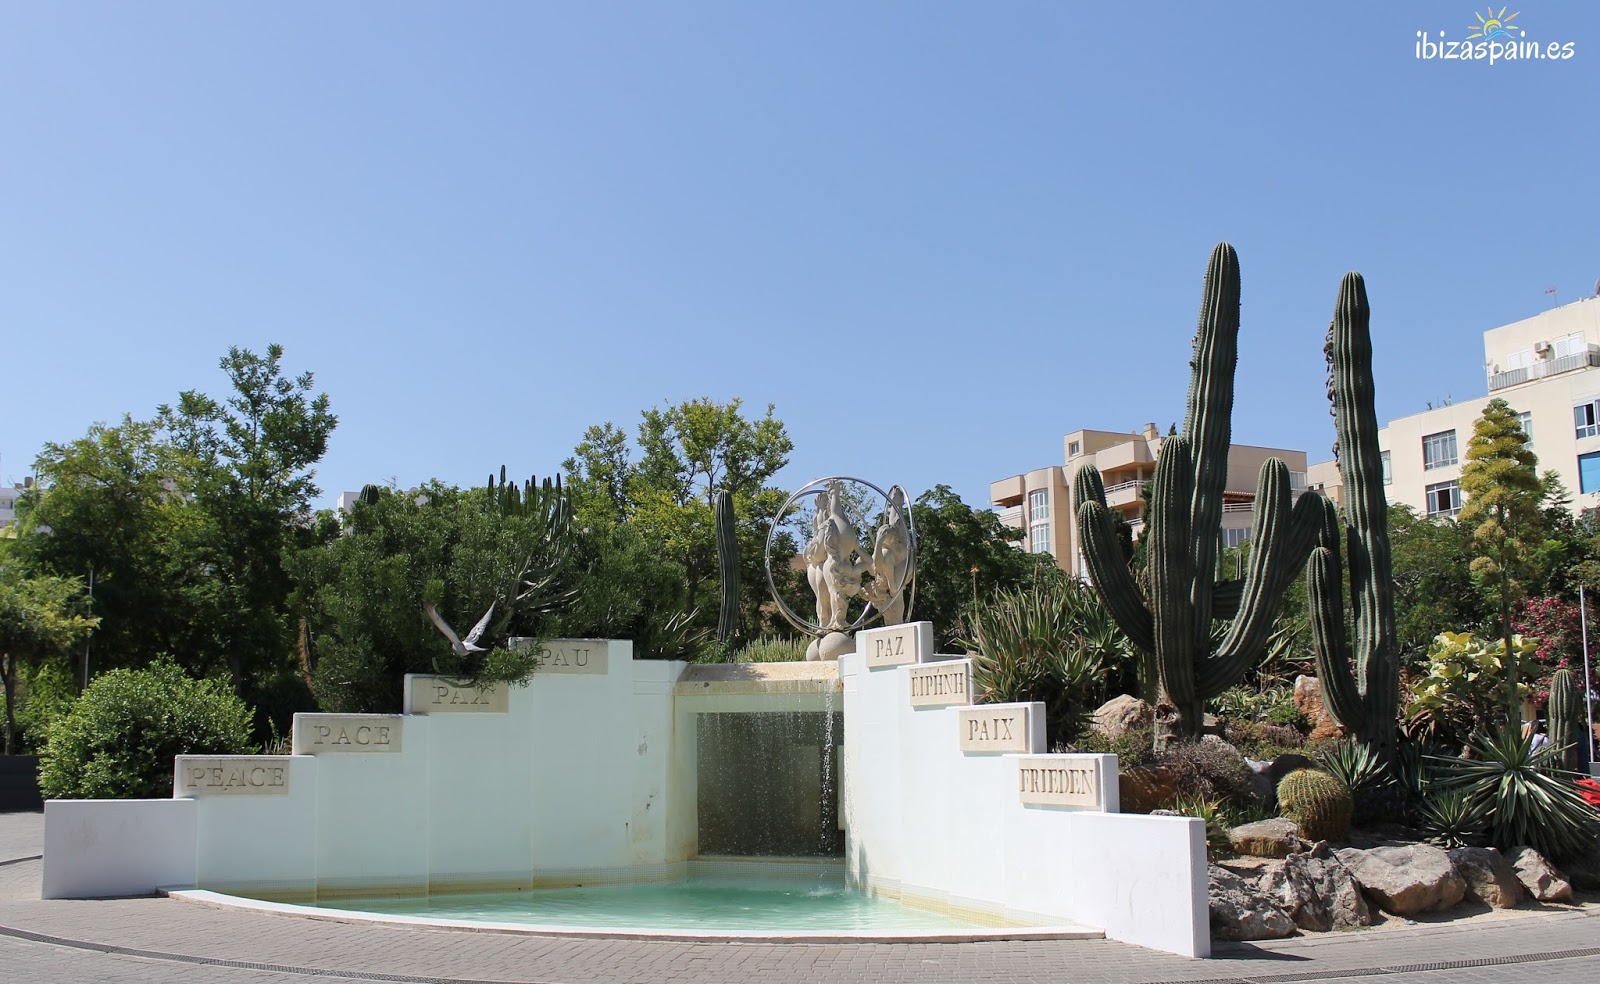 Parque de la Paz Ibiza